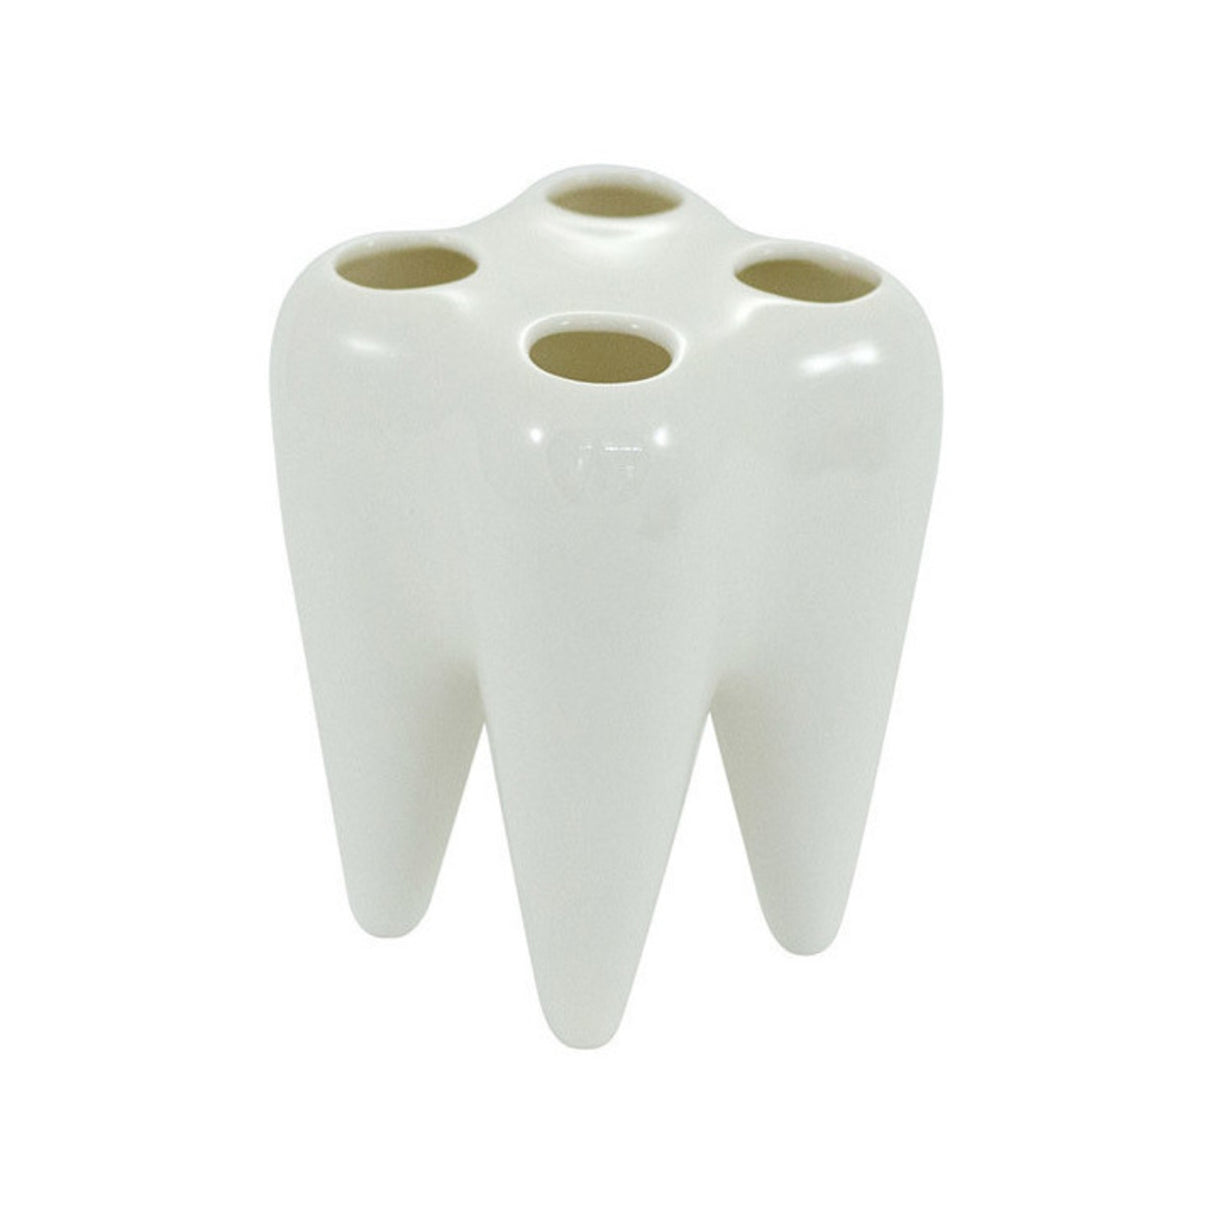 und jetzt - Zahnbürstenhalter Kaufe spare! – Keramik